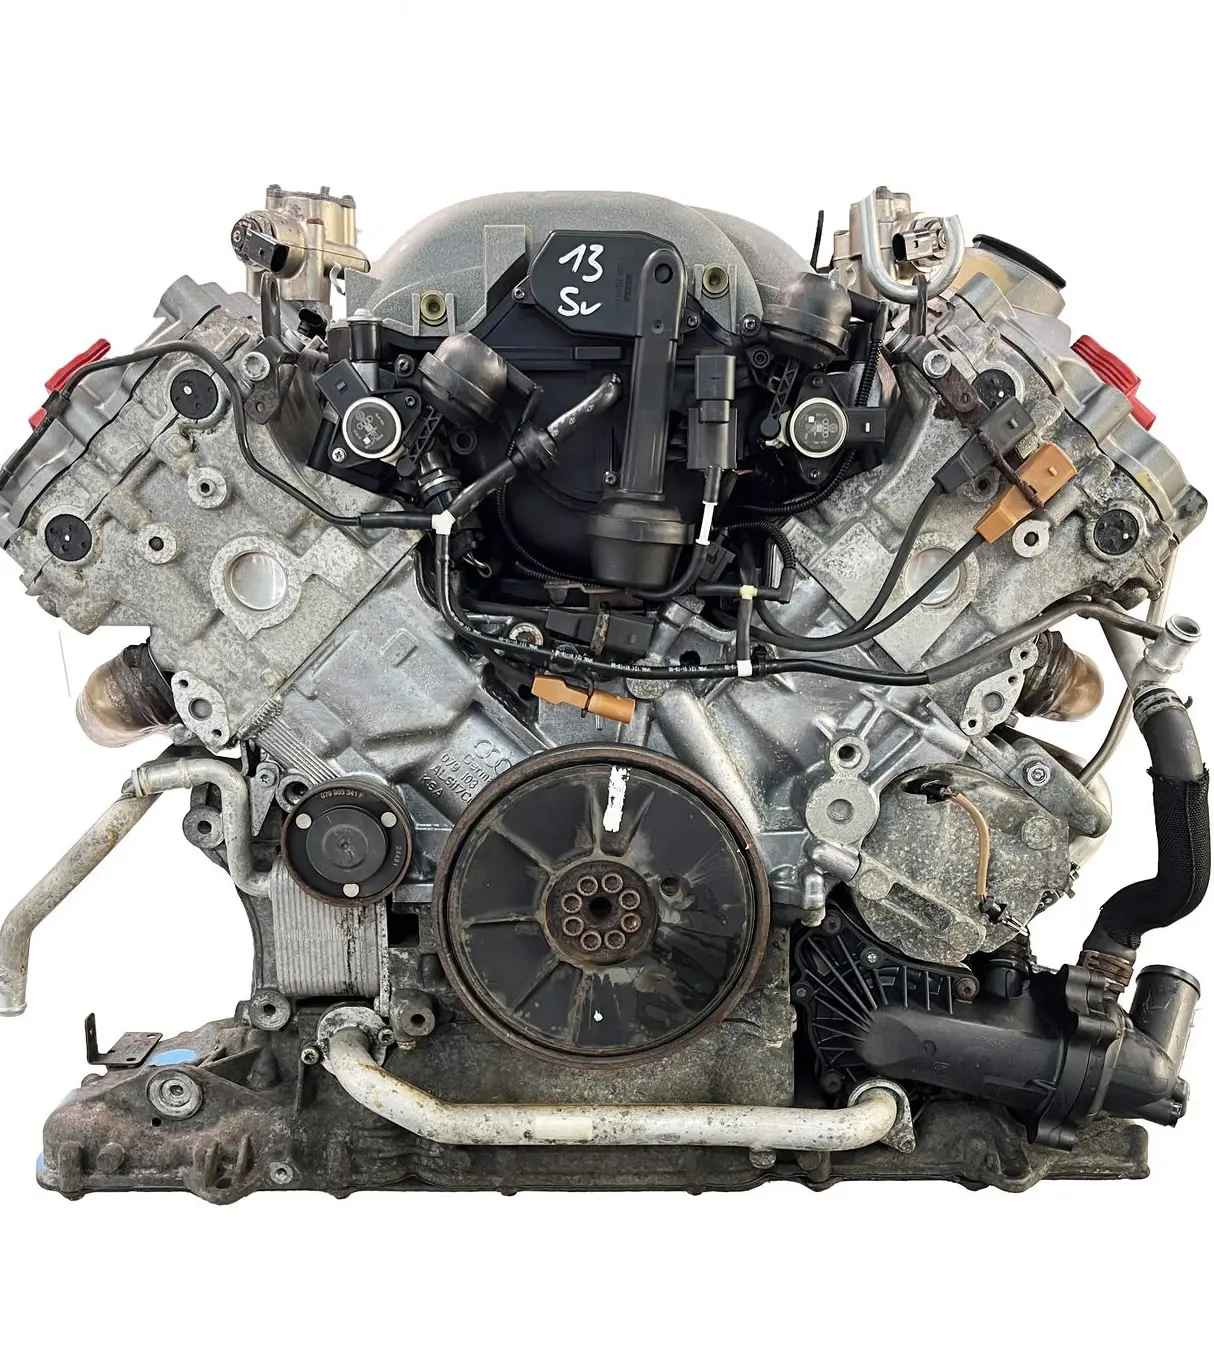 BVJ BAR V8 Moteur à essence 350 HP 257 Kw 4,2 FSI V8 Moteur pour Audi A6 A8 Q7 AWD C6 Moteur Touareg 4.2 MOTEUR